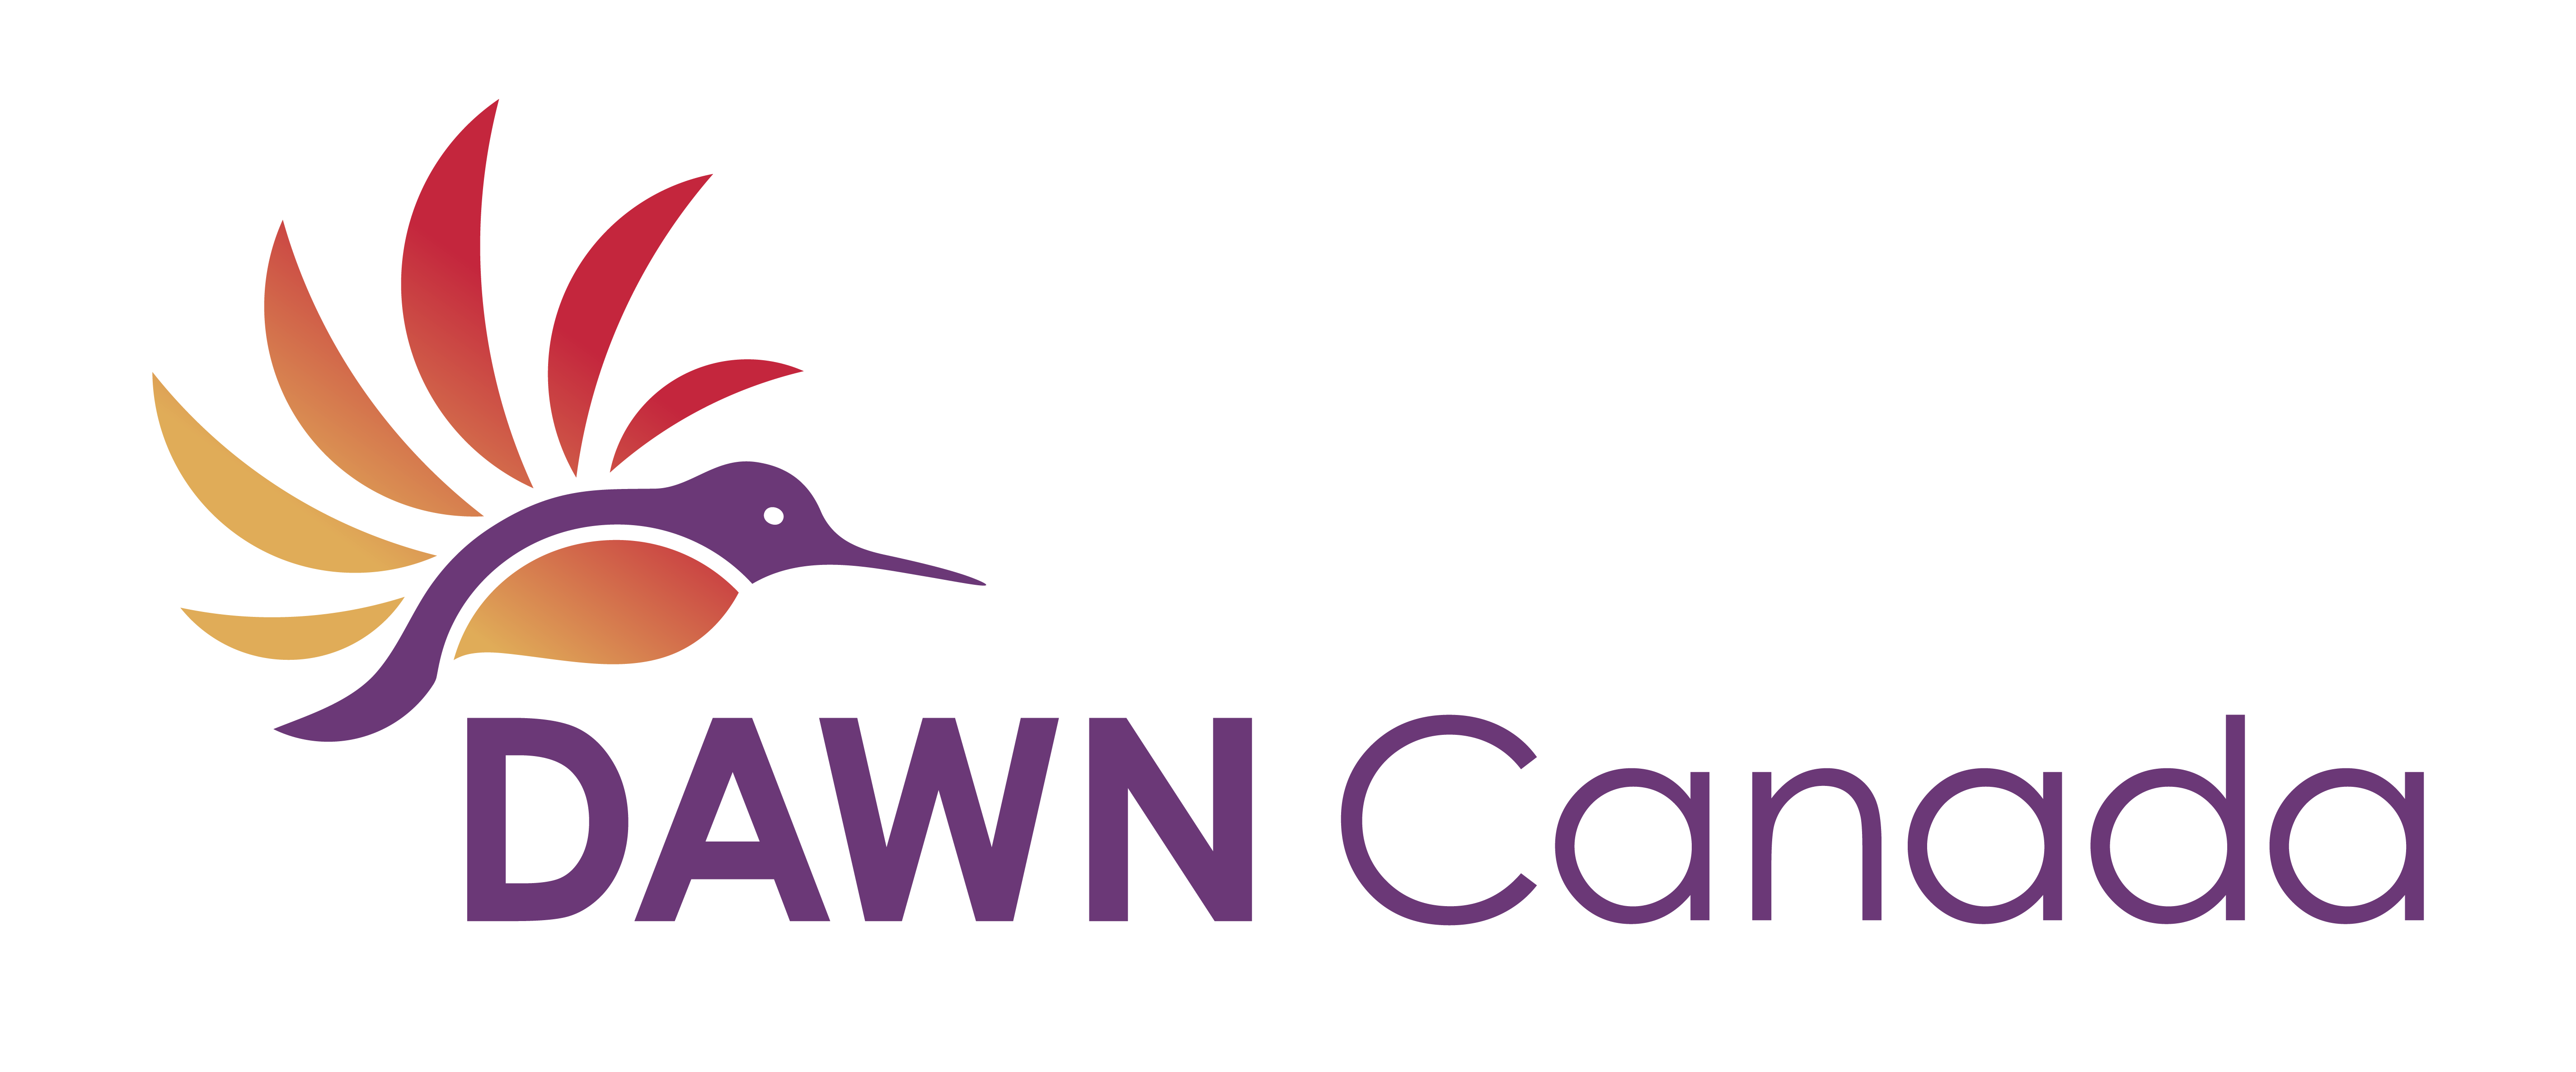 Dawncanada logo horizontal colour